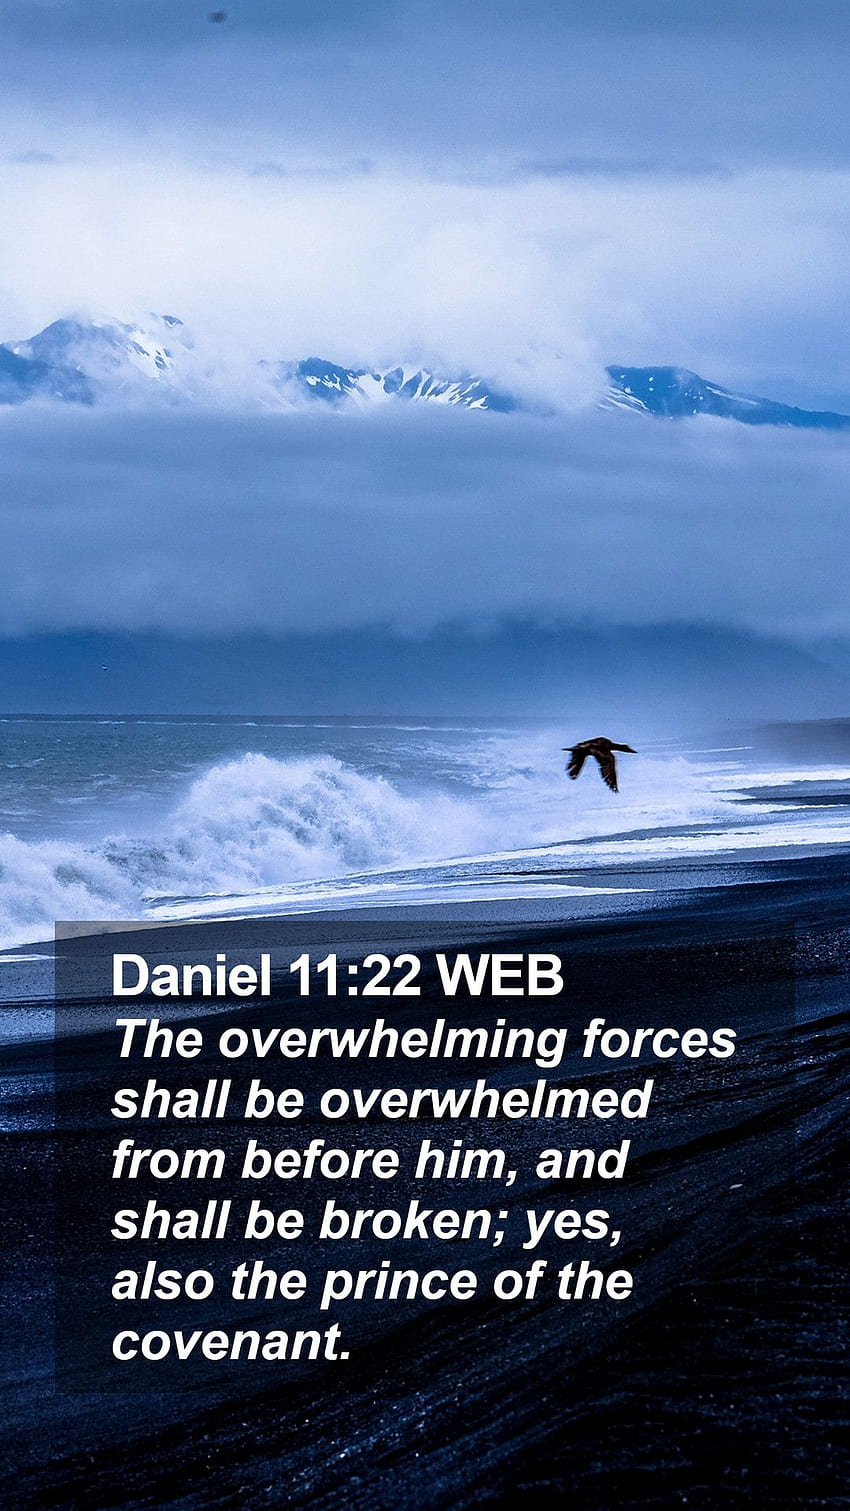 Daniel 11:22 WEB Mobile Phone - Les forces écrasantes seront submergées de Fond d'écran de téléphone HD